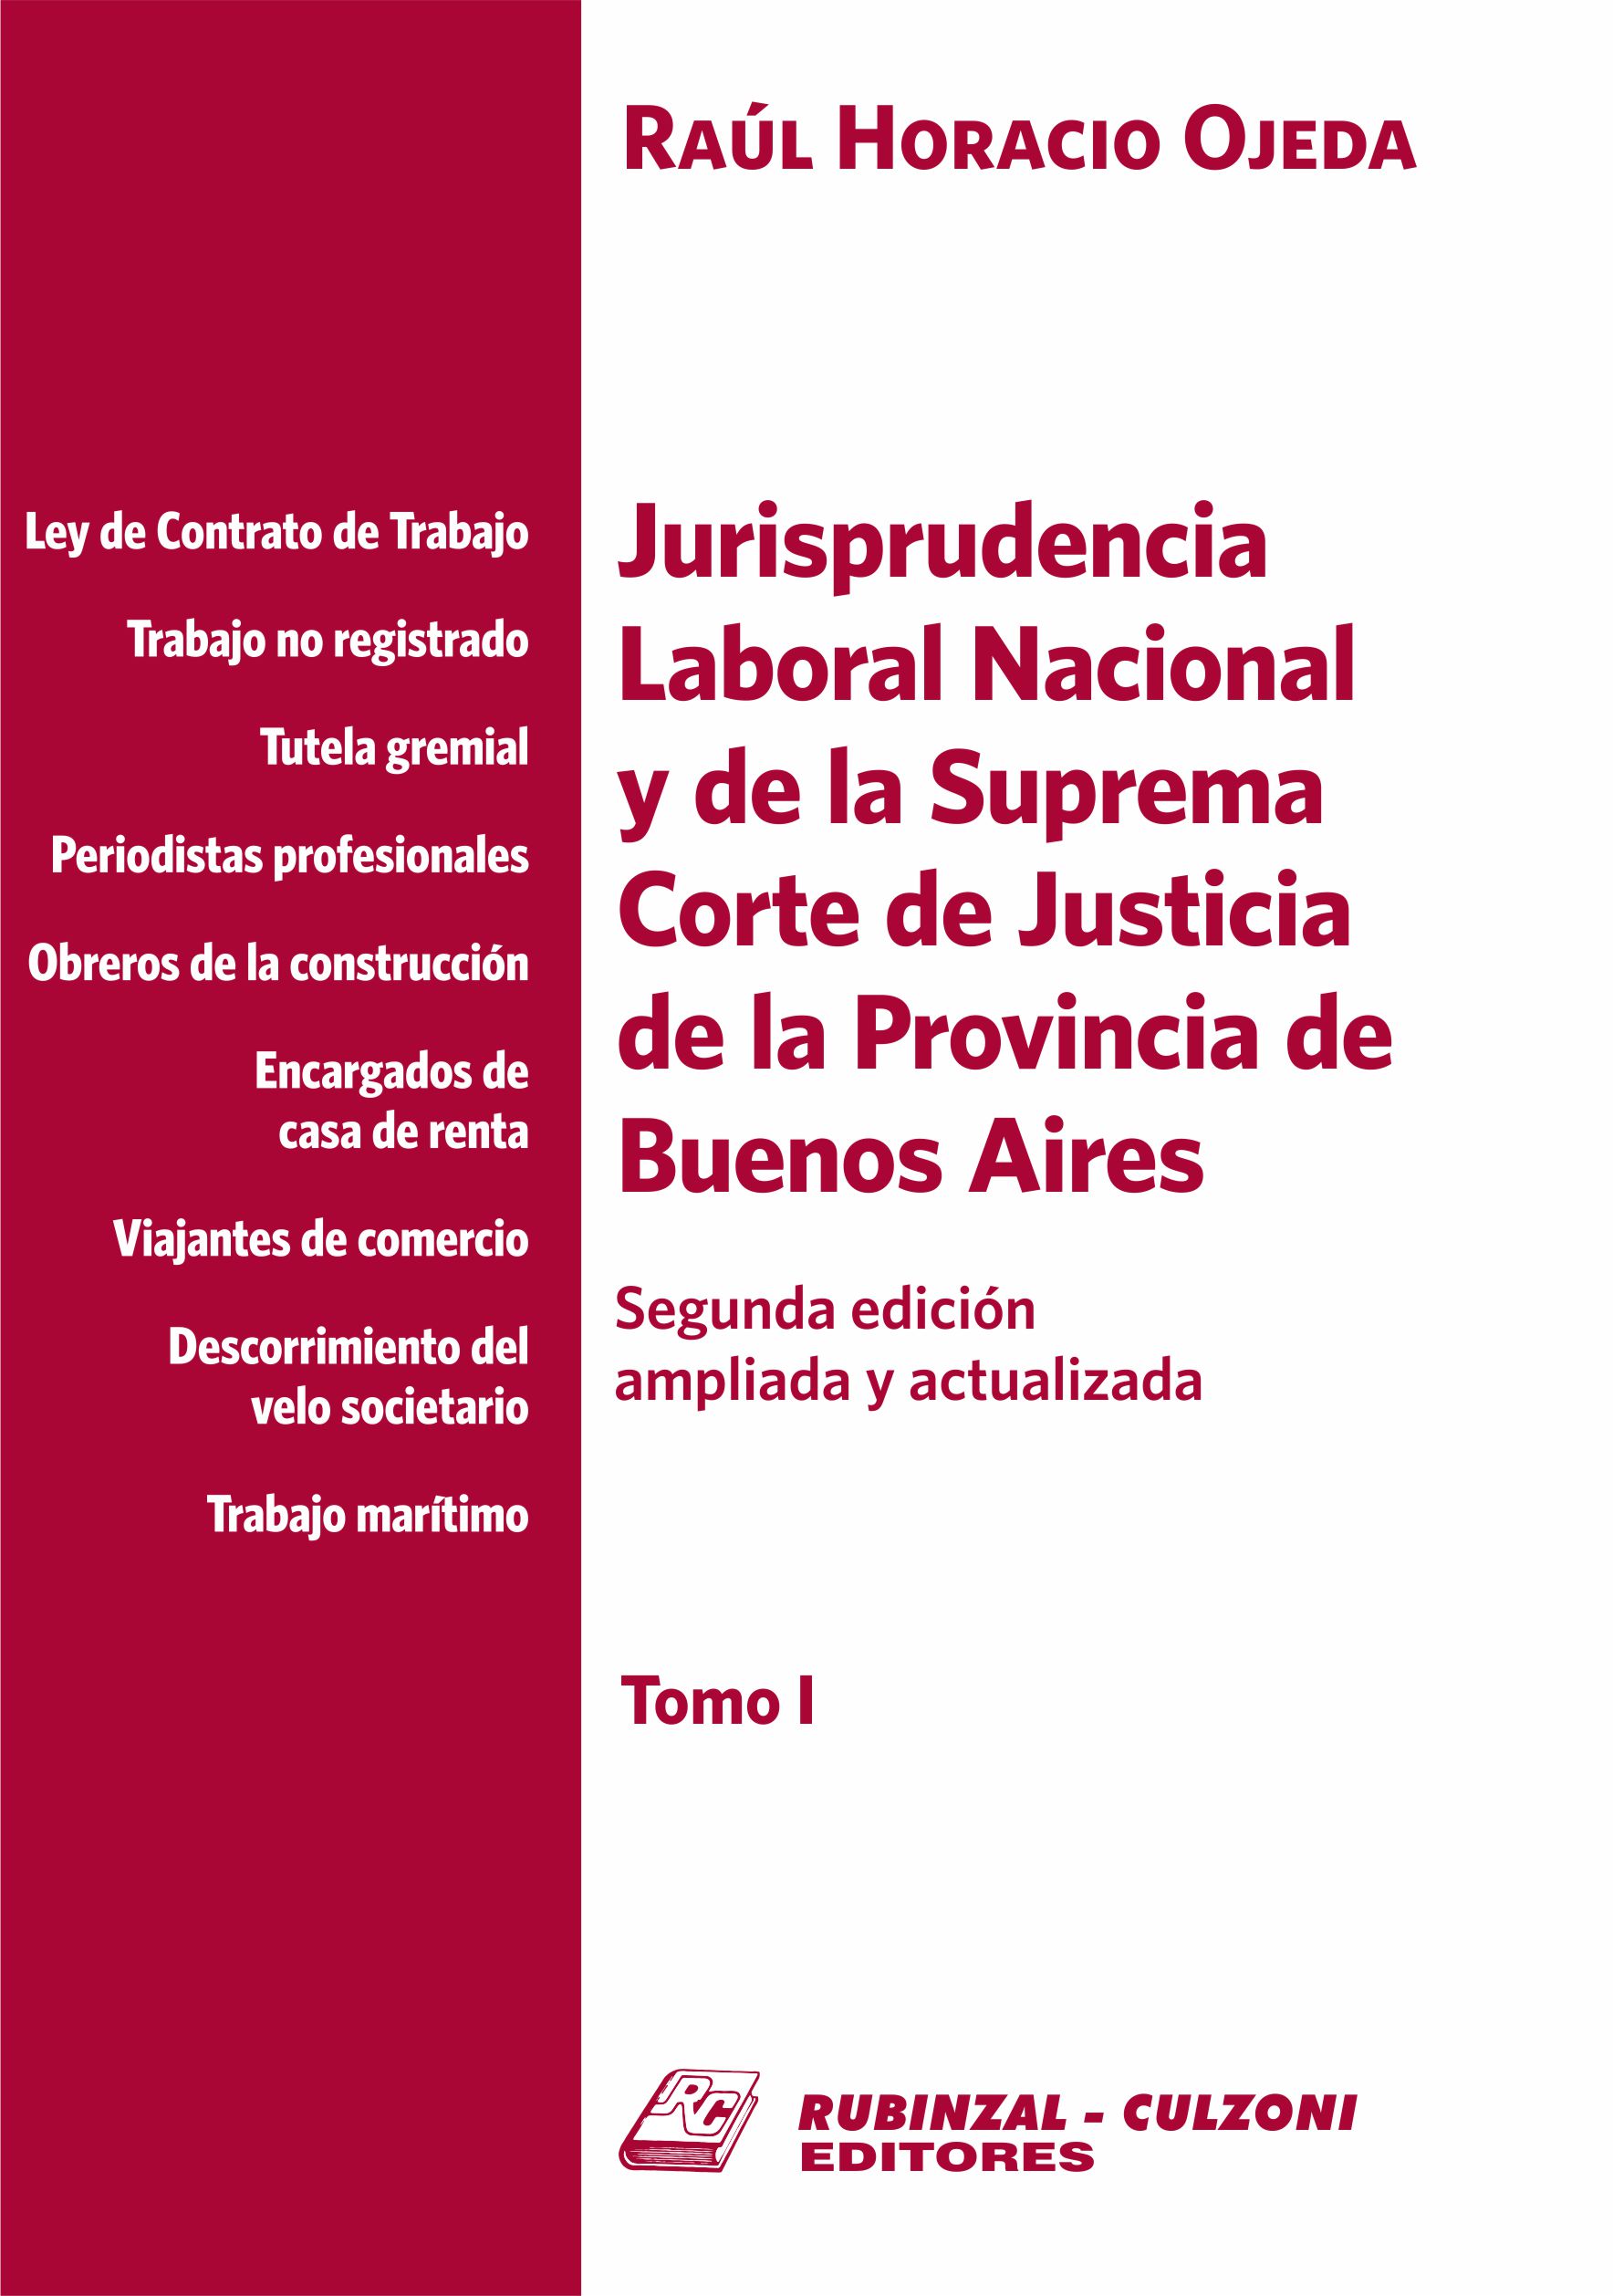 Jurisprudencia Laboral Nacional y de la Suprema Corte de Justicia de la Provincia de Buenos Aires - Tomo I